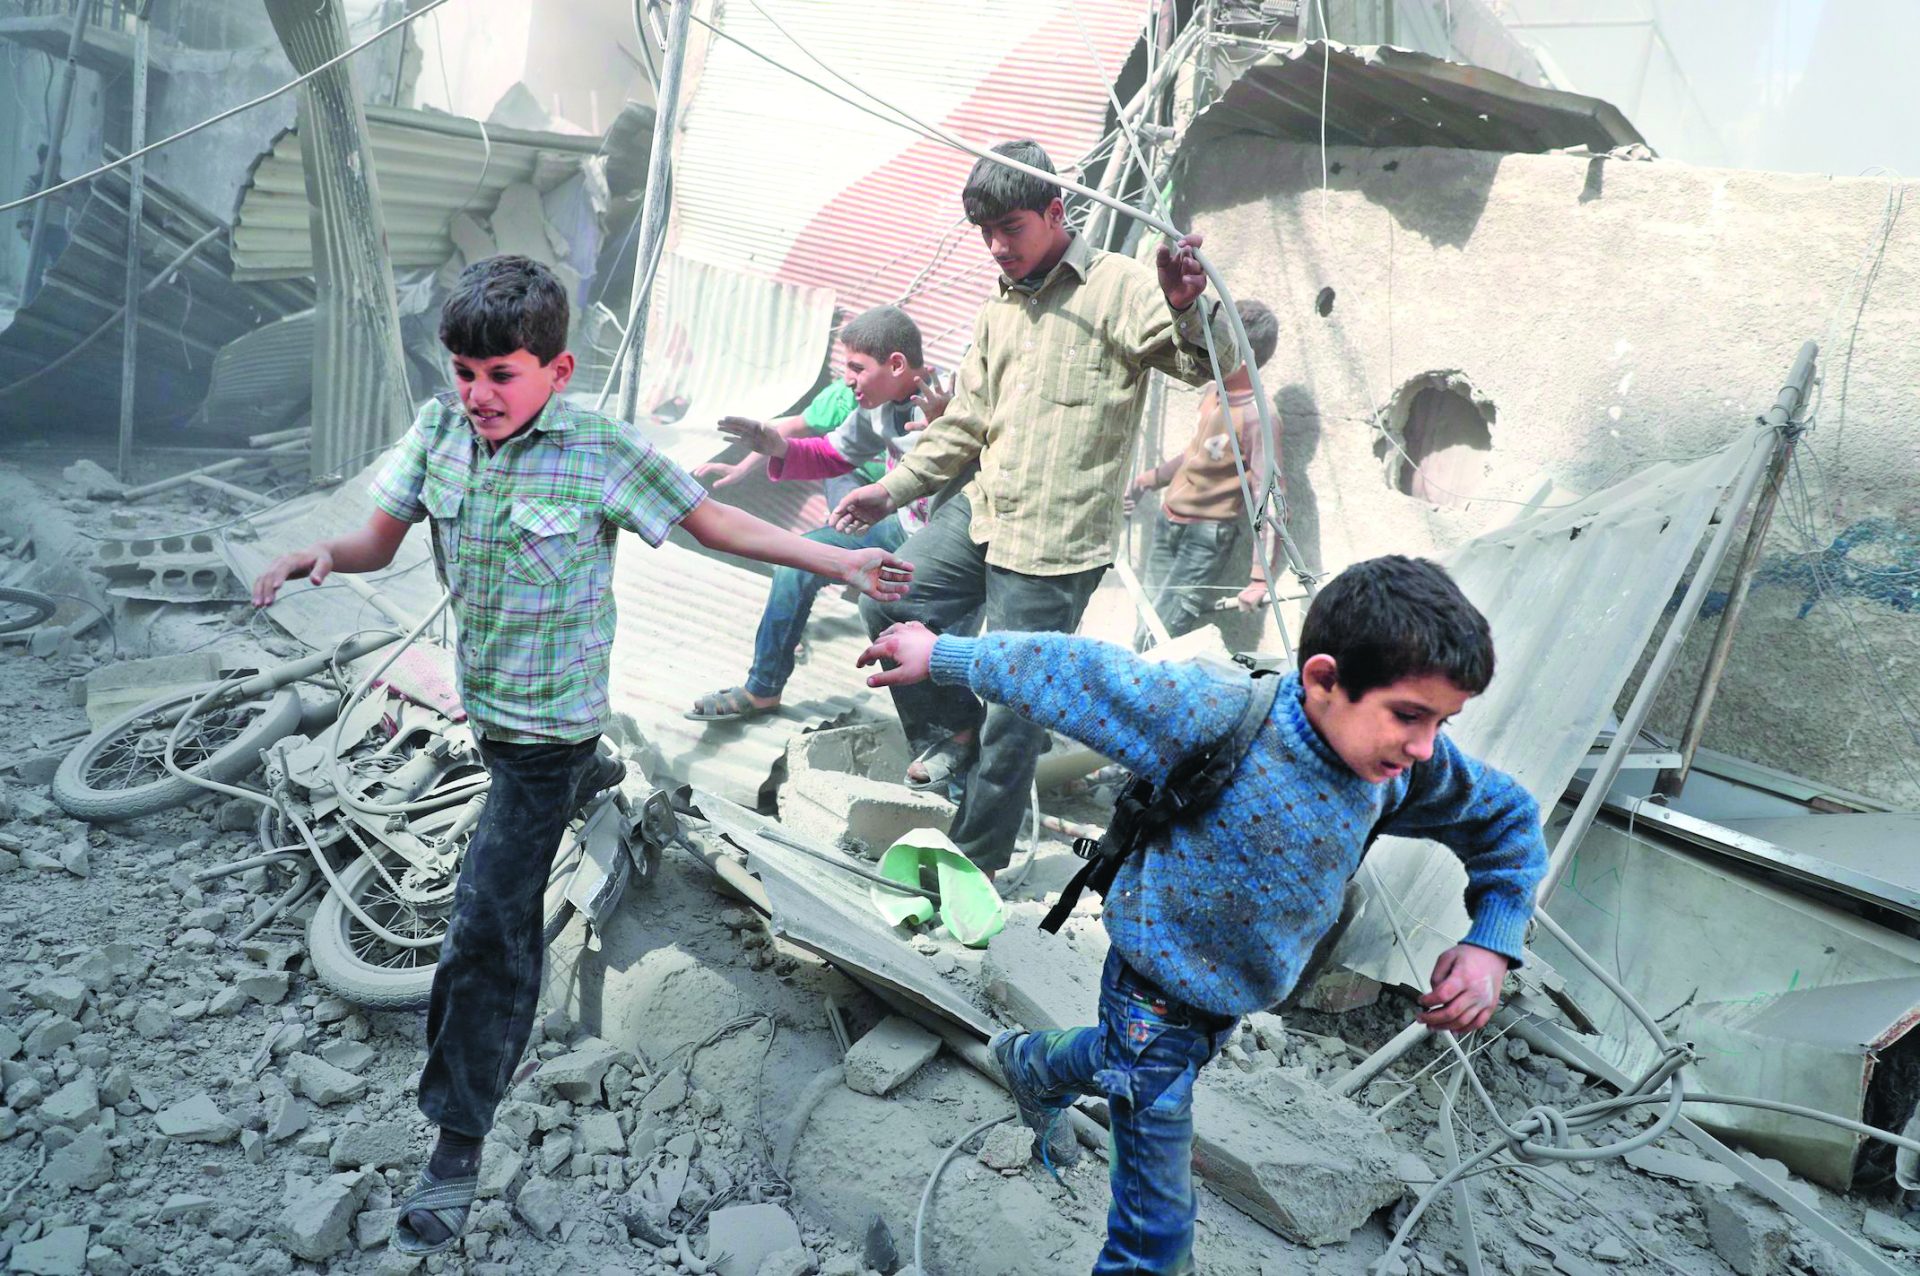 Síria. Bombardeamentos atingem escola e matam 14 crianças